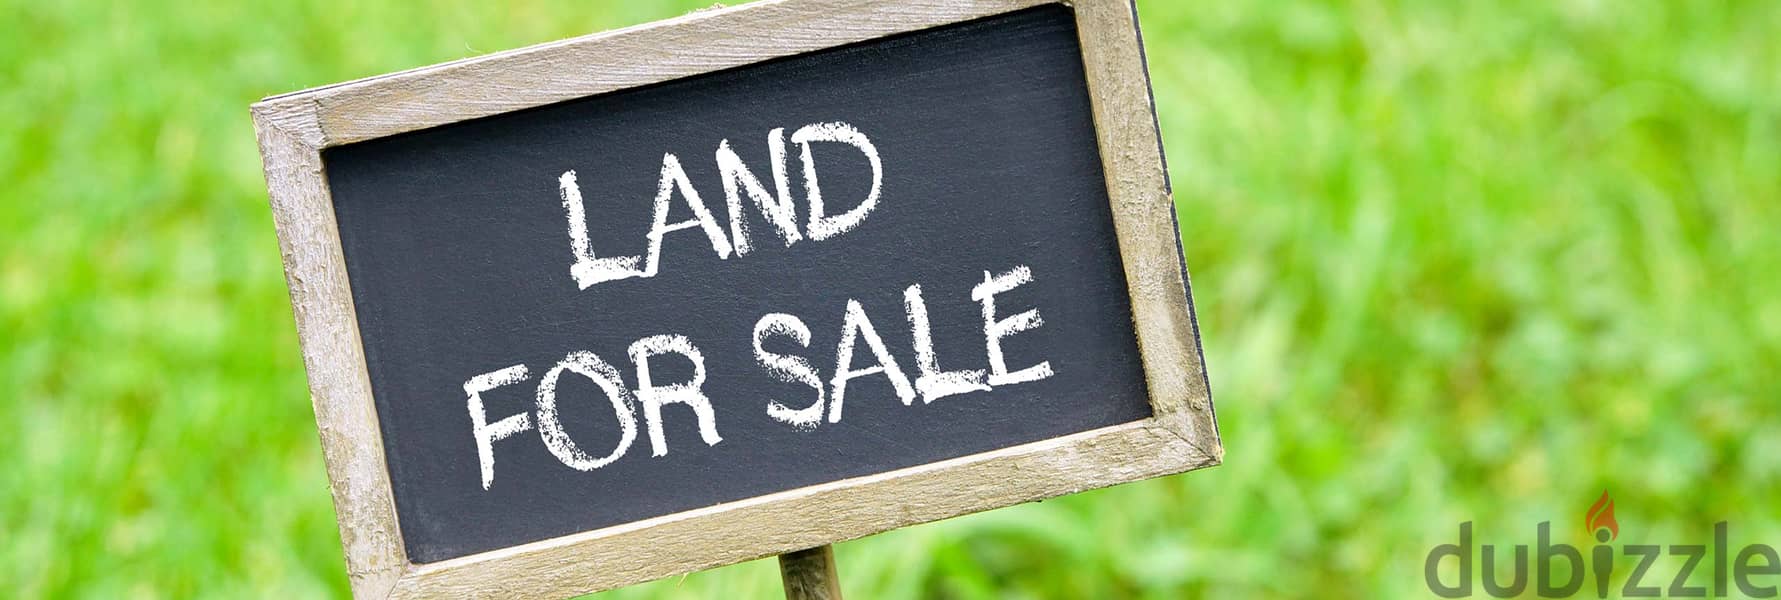 Land for sale in Kornet Chahwan ارض للبيع في قرنة شهوان 2